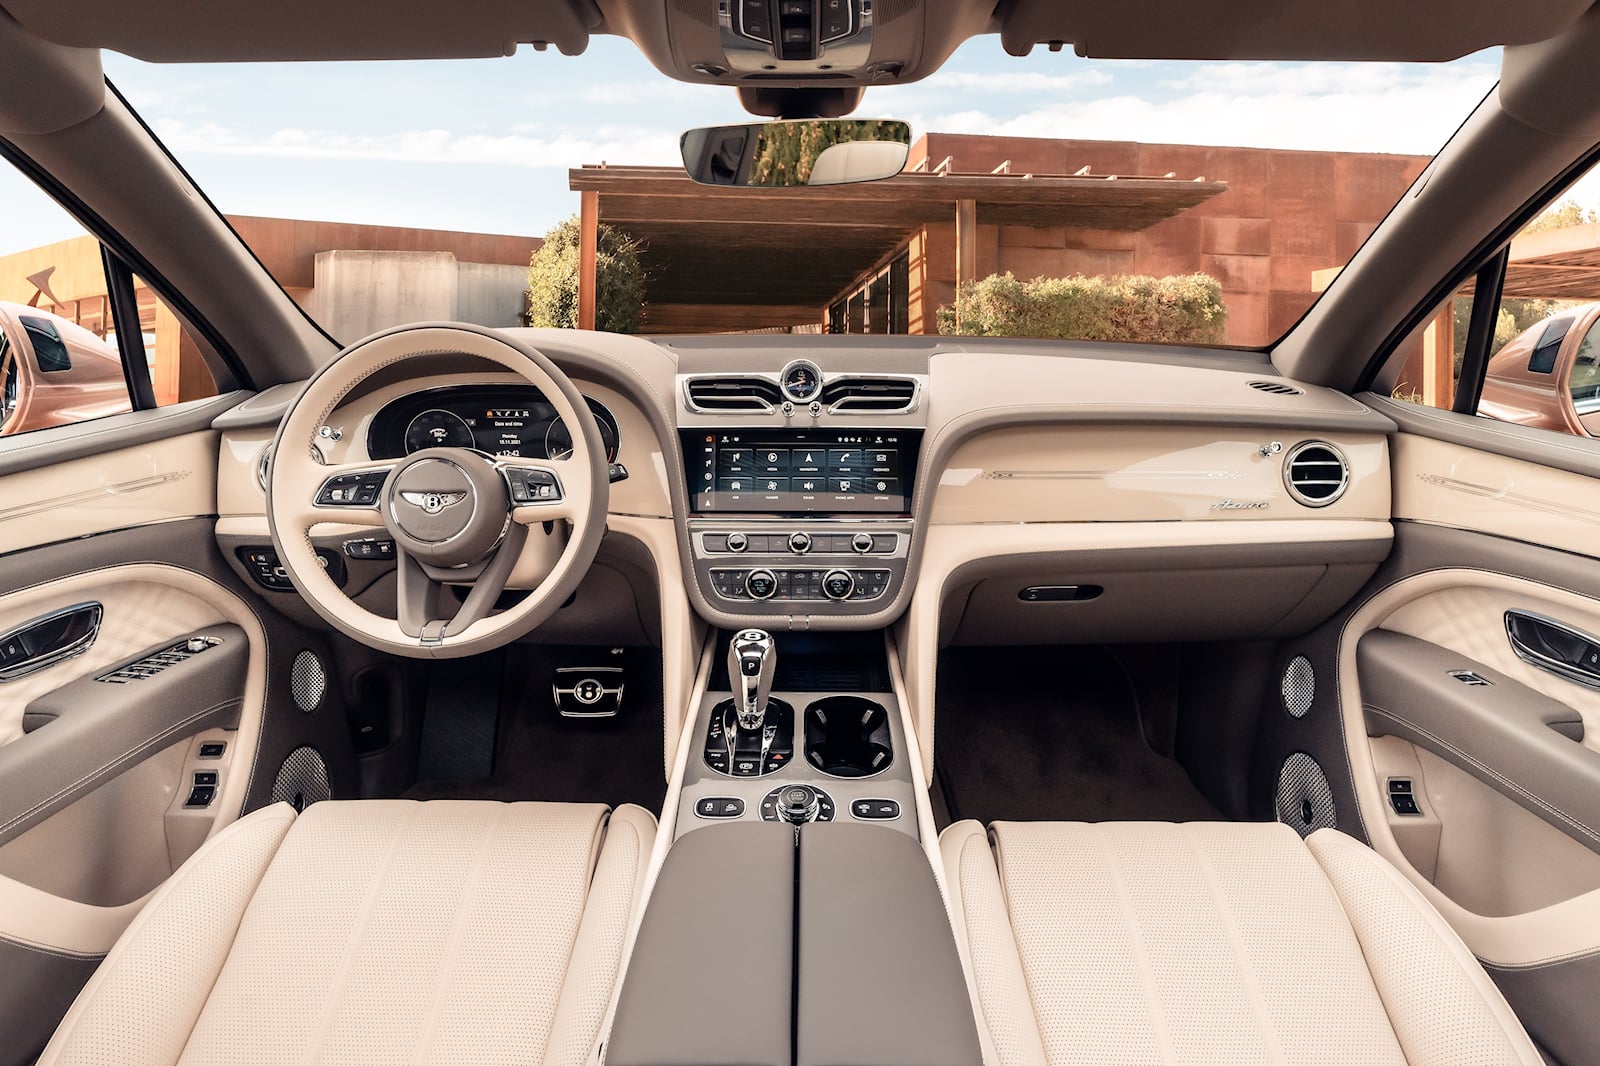 2023 Bentley Bentayga Interior Dimensions: Seating, Cargo Space & Trunk Size - Photos | CarBuzz